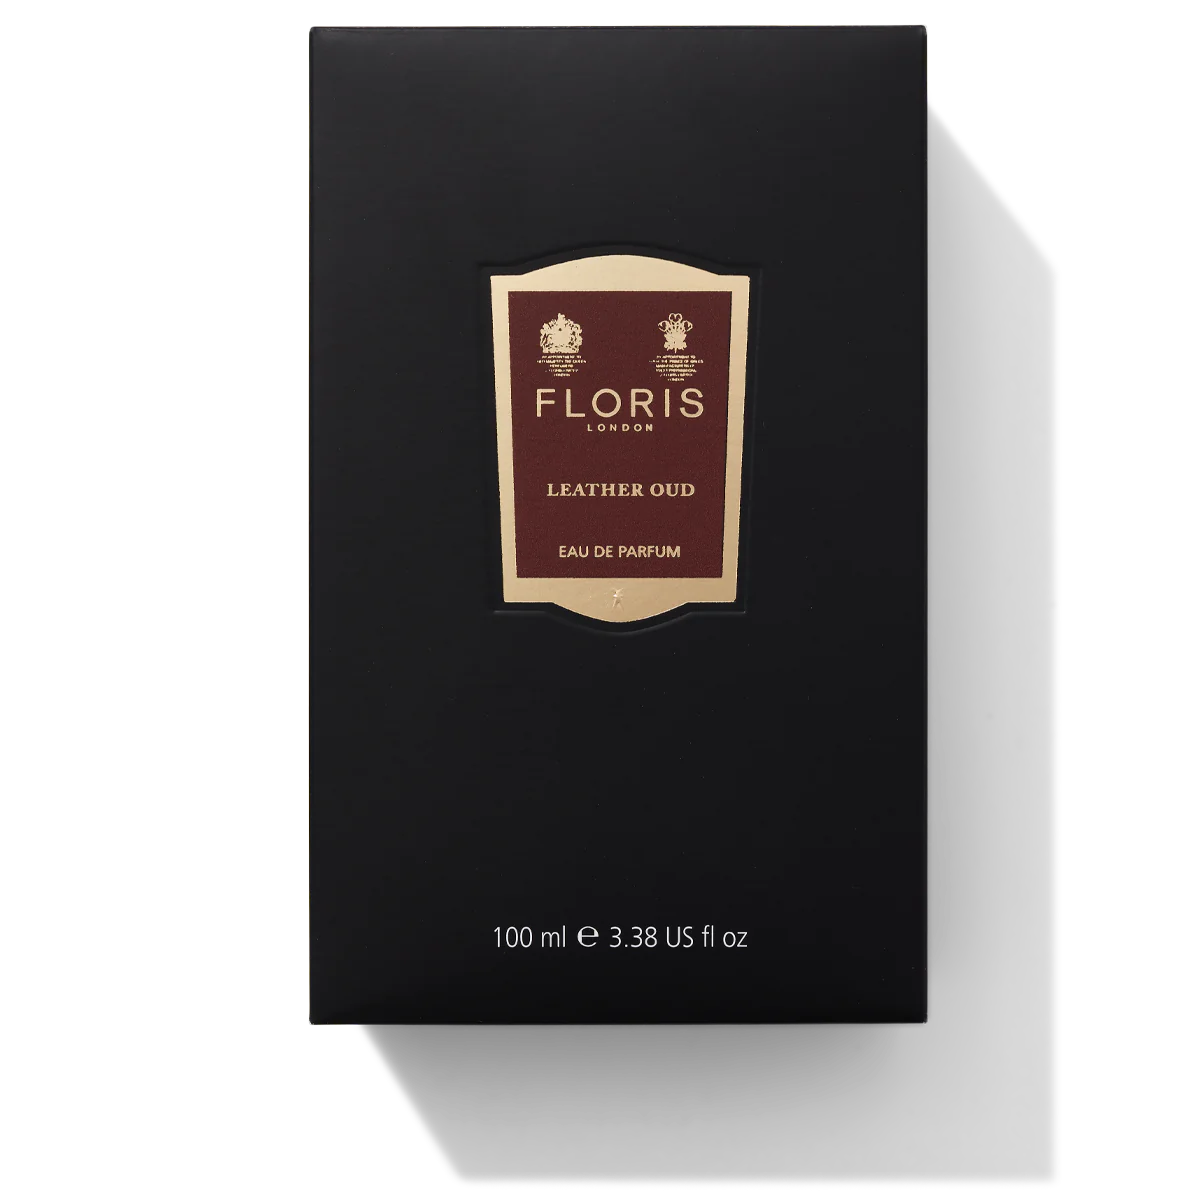 Floris London Leather Oud Eau de Parfum 100ml Box